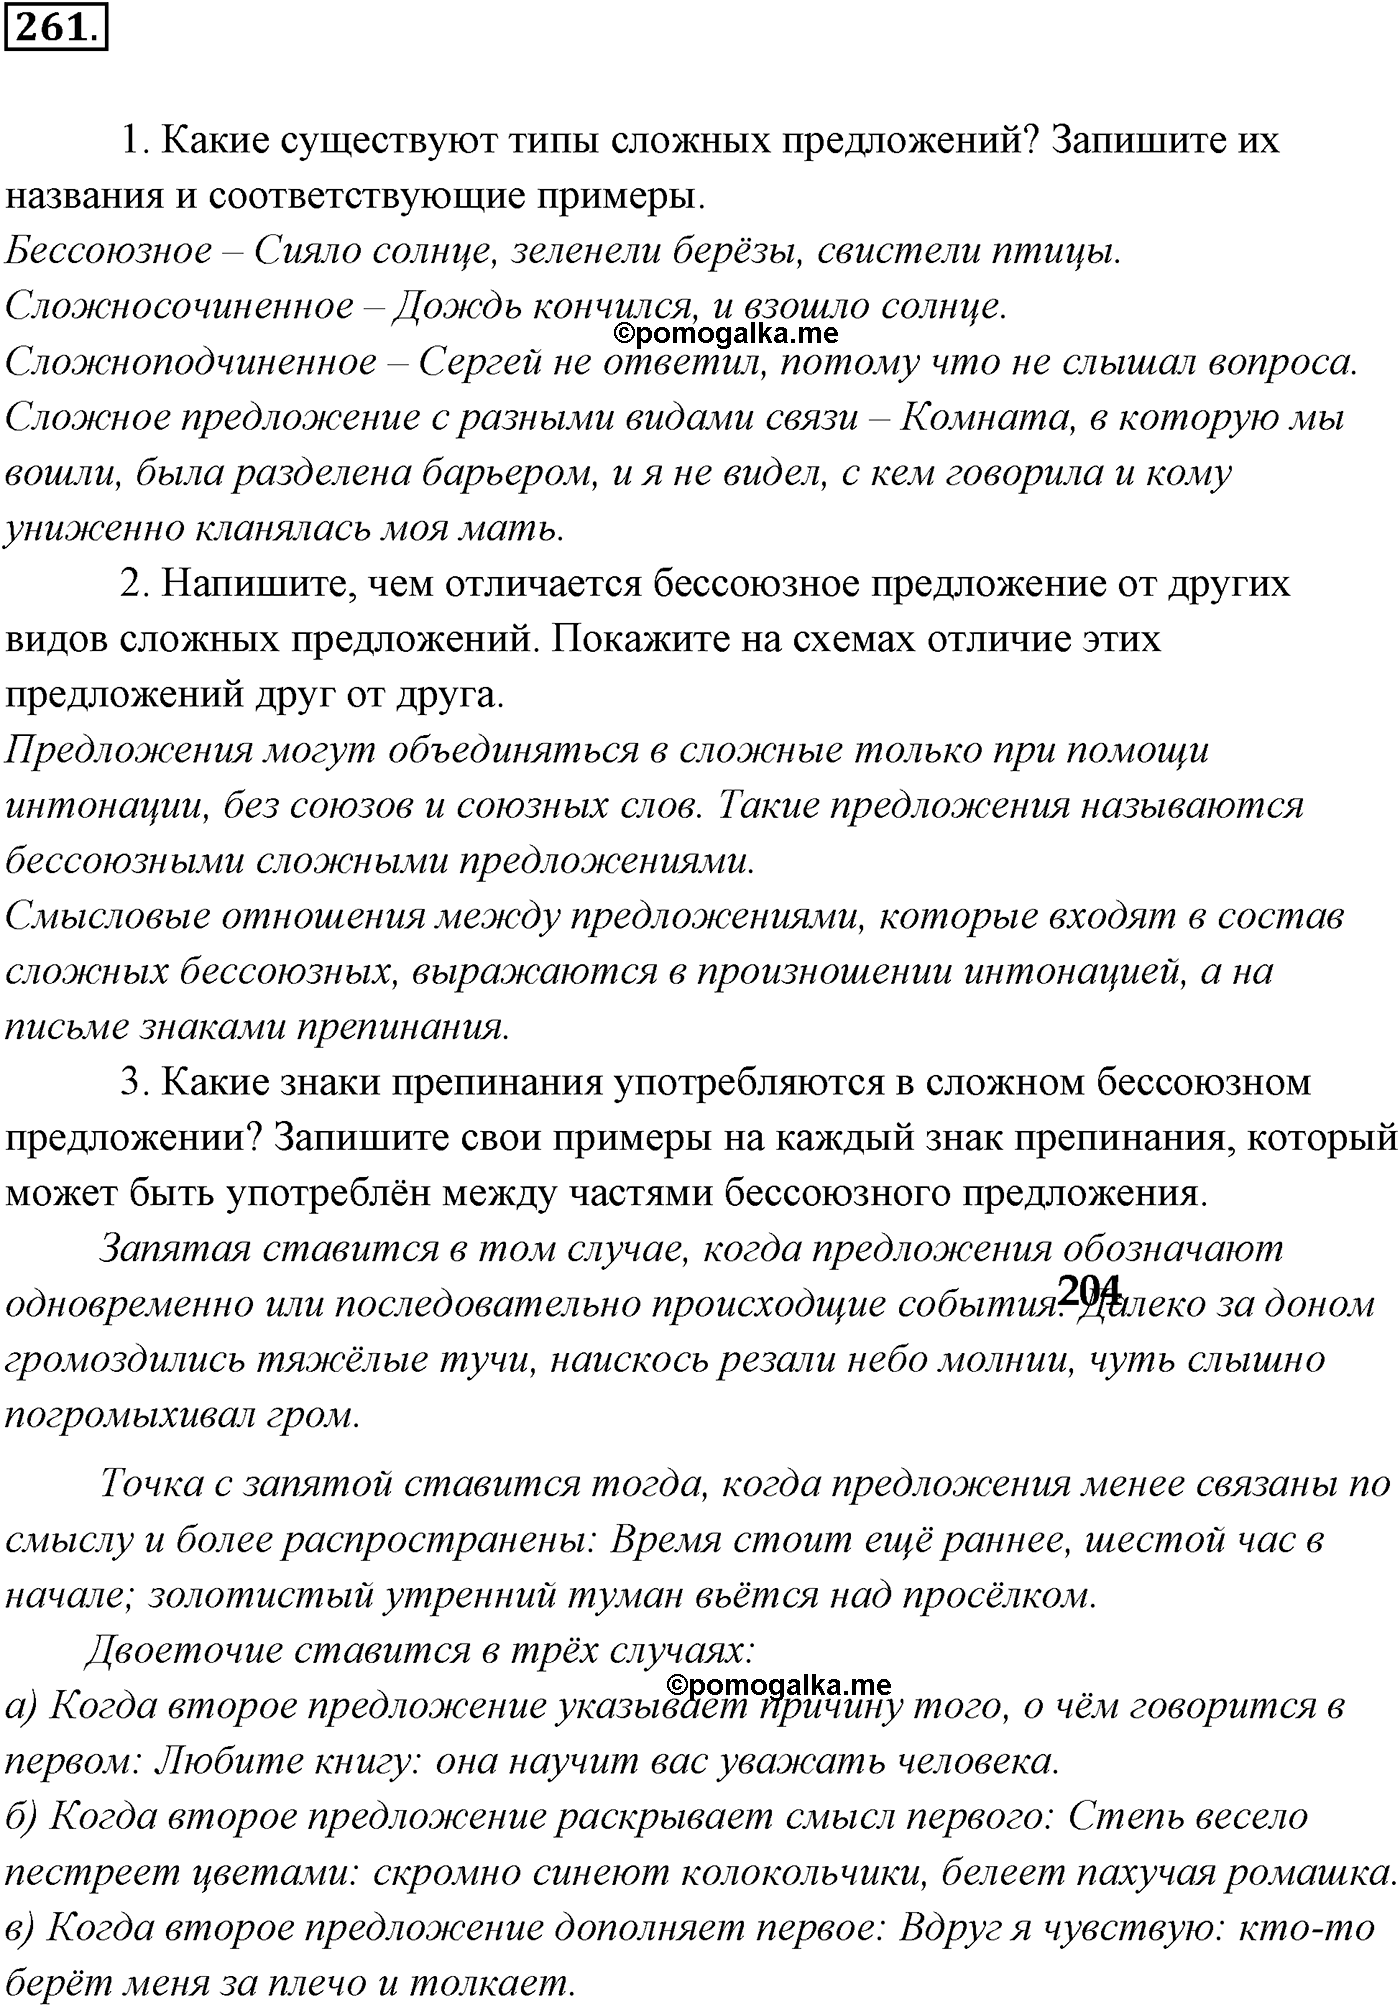 упражнение №261 русский язык 9 класс Разумовская